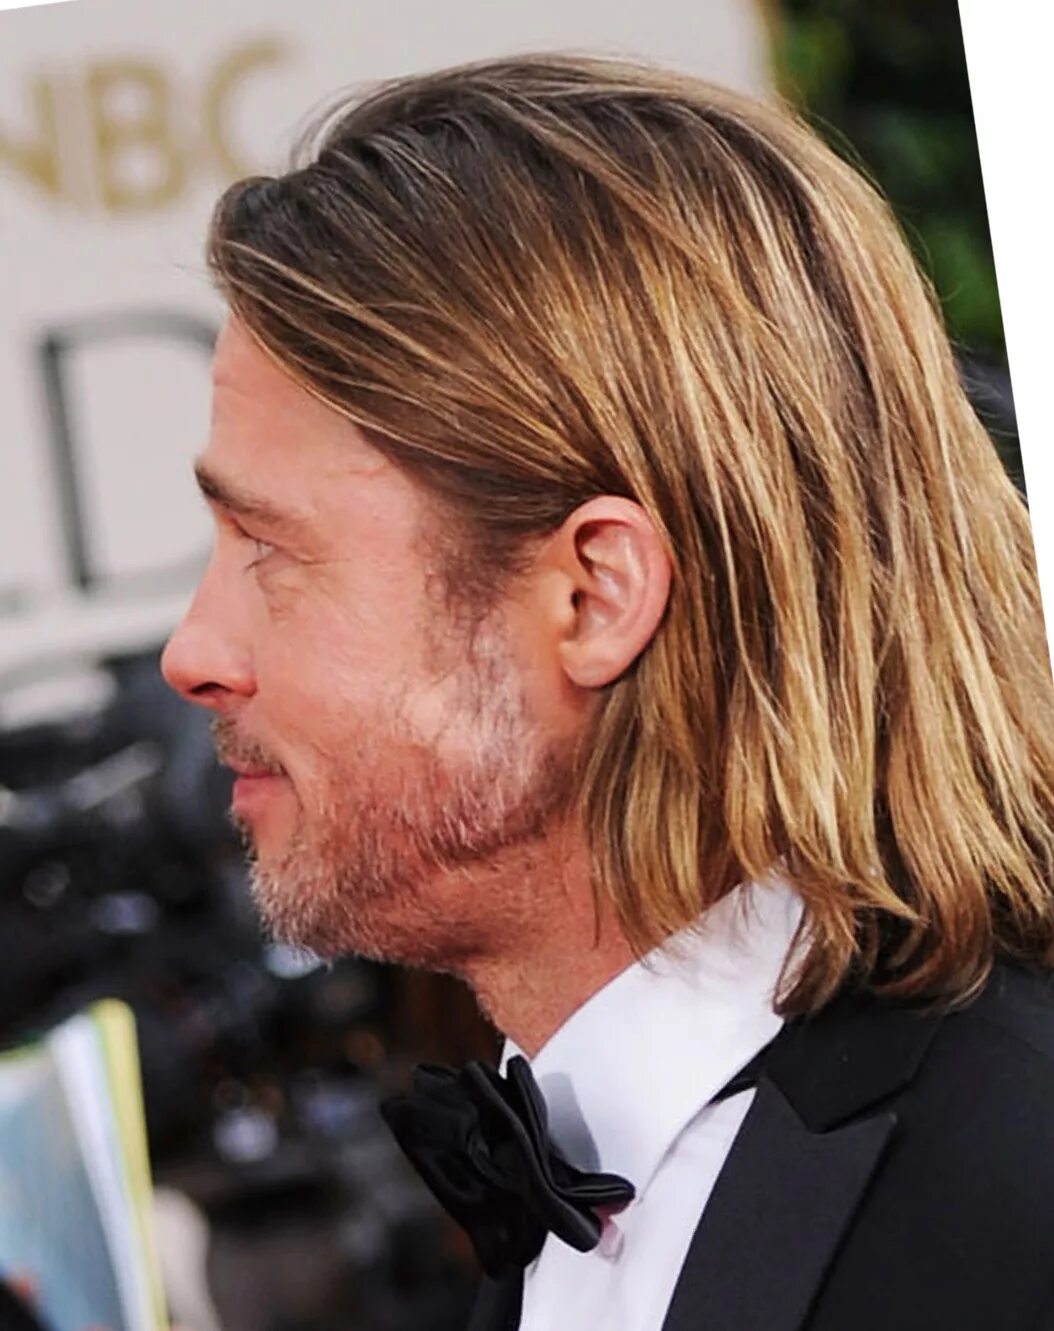 Брэд Питт (Brad Pitt) длинные волосы. Брэд Питт удлиненная стрижка. Брэд Питт стрижка серфер. Брэд Питт стрижка. Брэд питт волосы